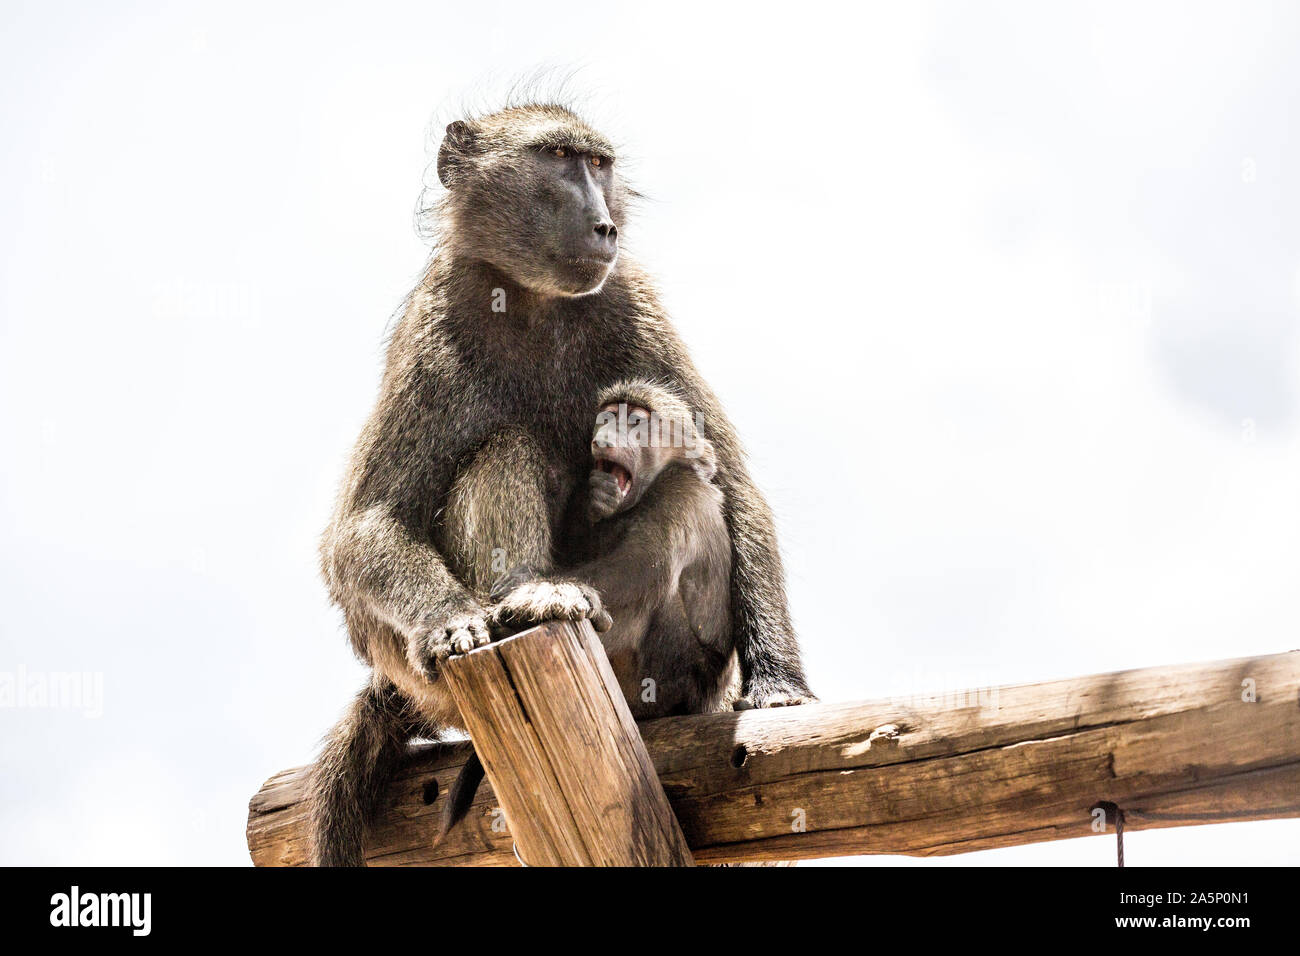 Le babouin avec son enfant assis sur une planche en bois, Namibie, Afrique Banque D'Images